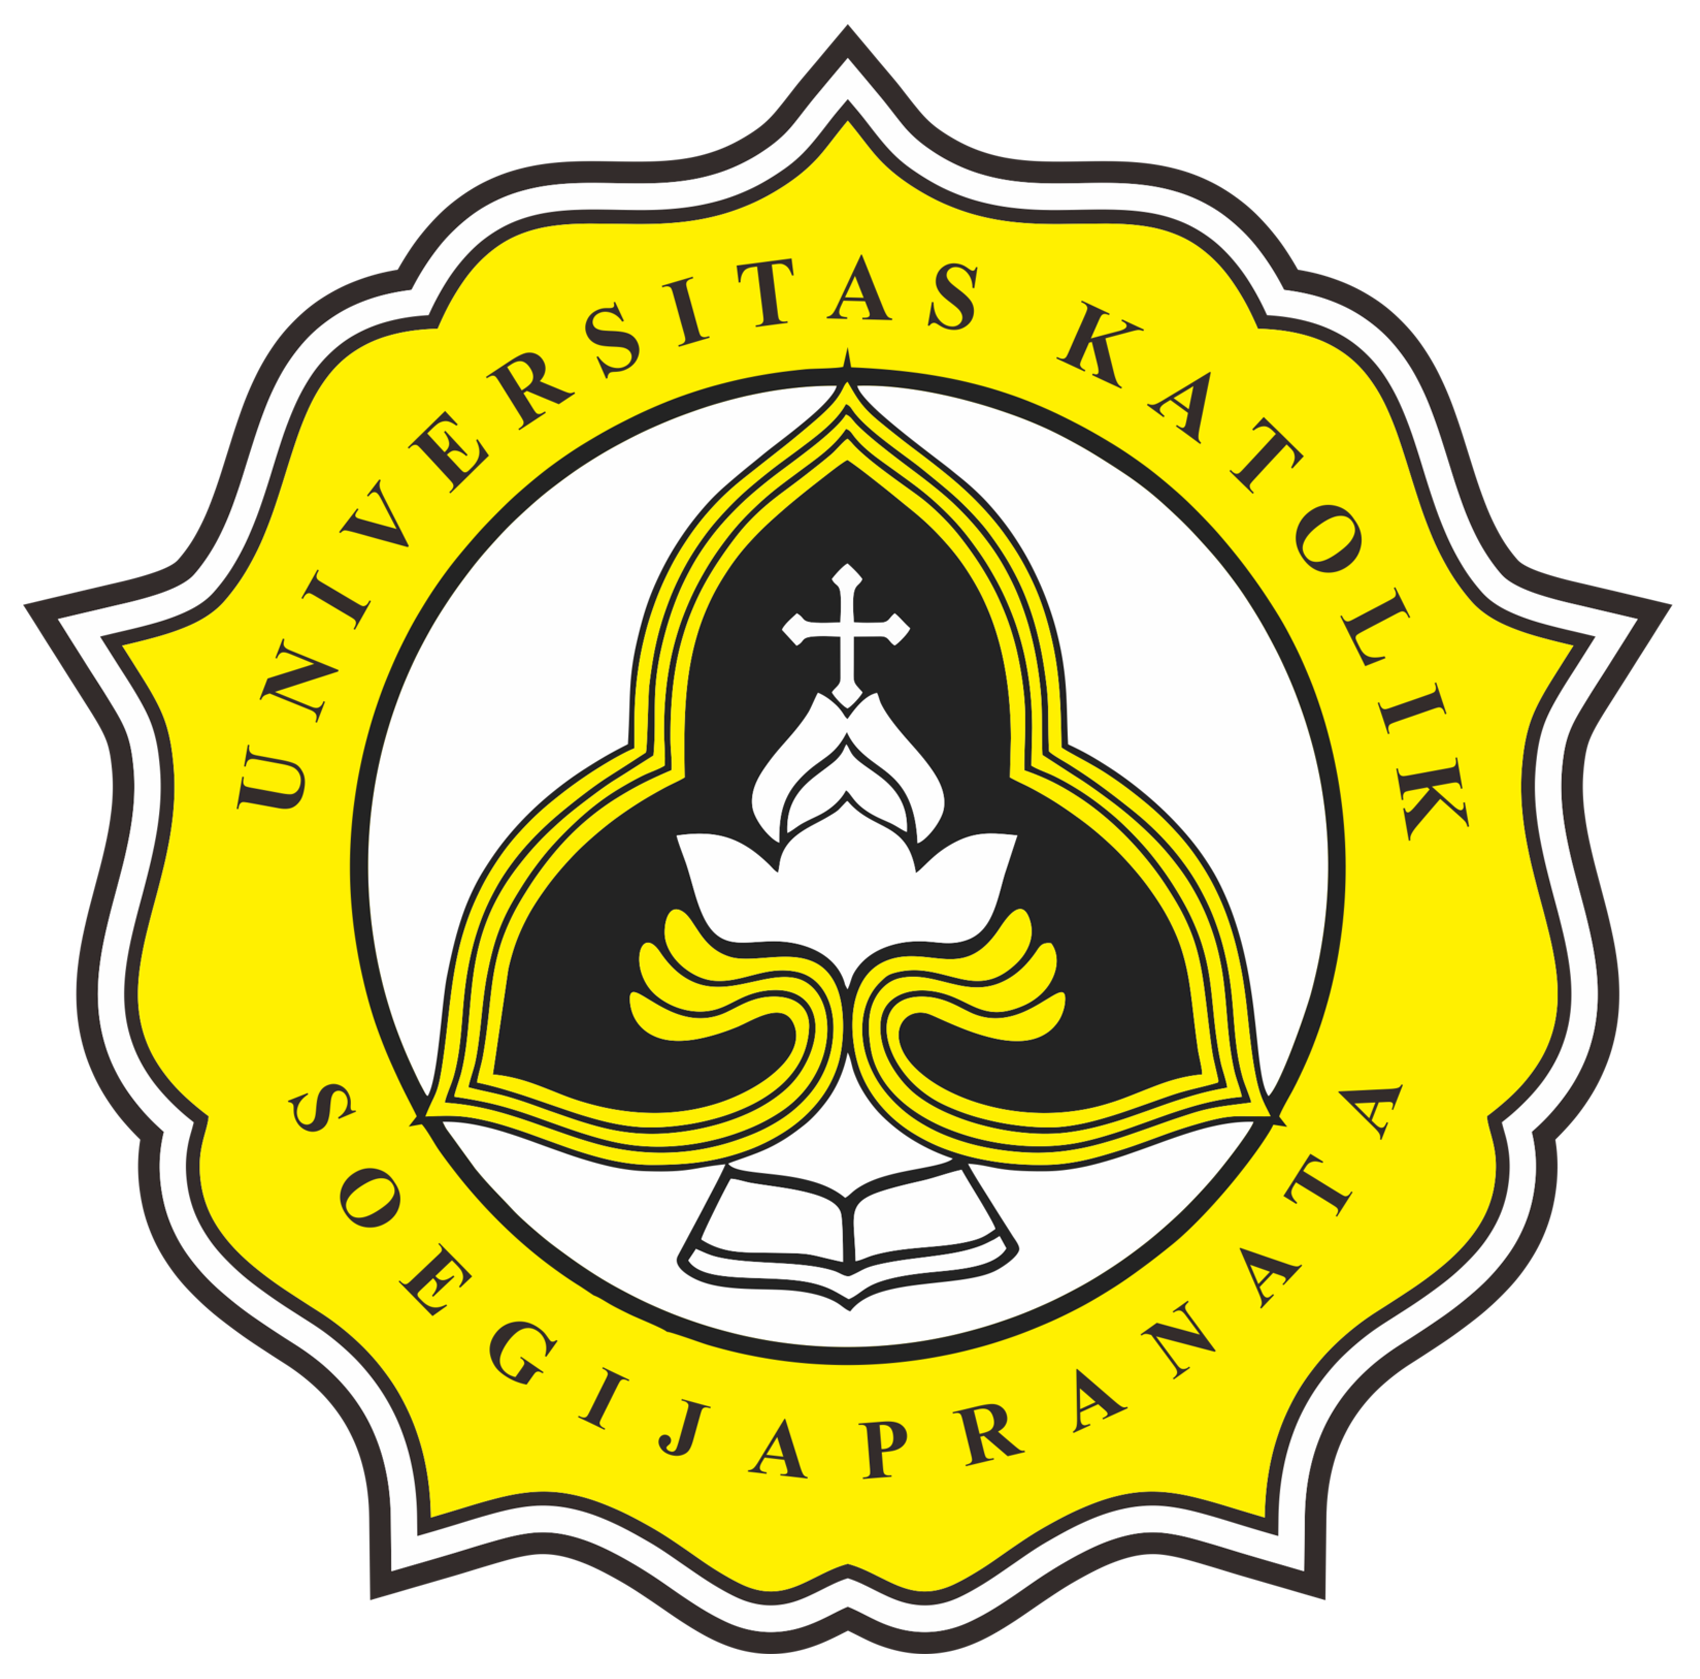 Universitas Katolik Soegijapranata